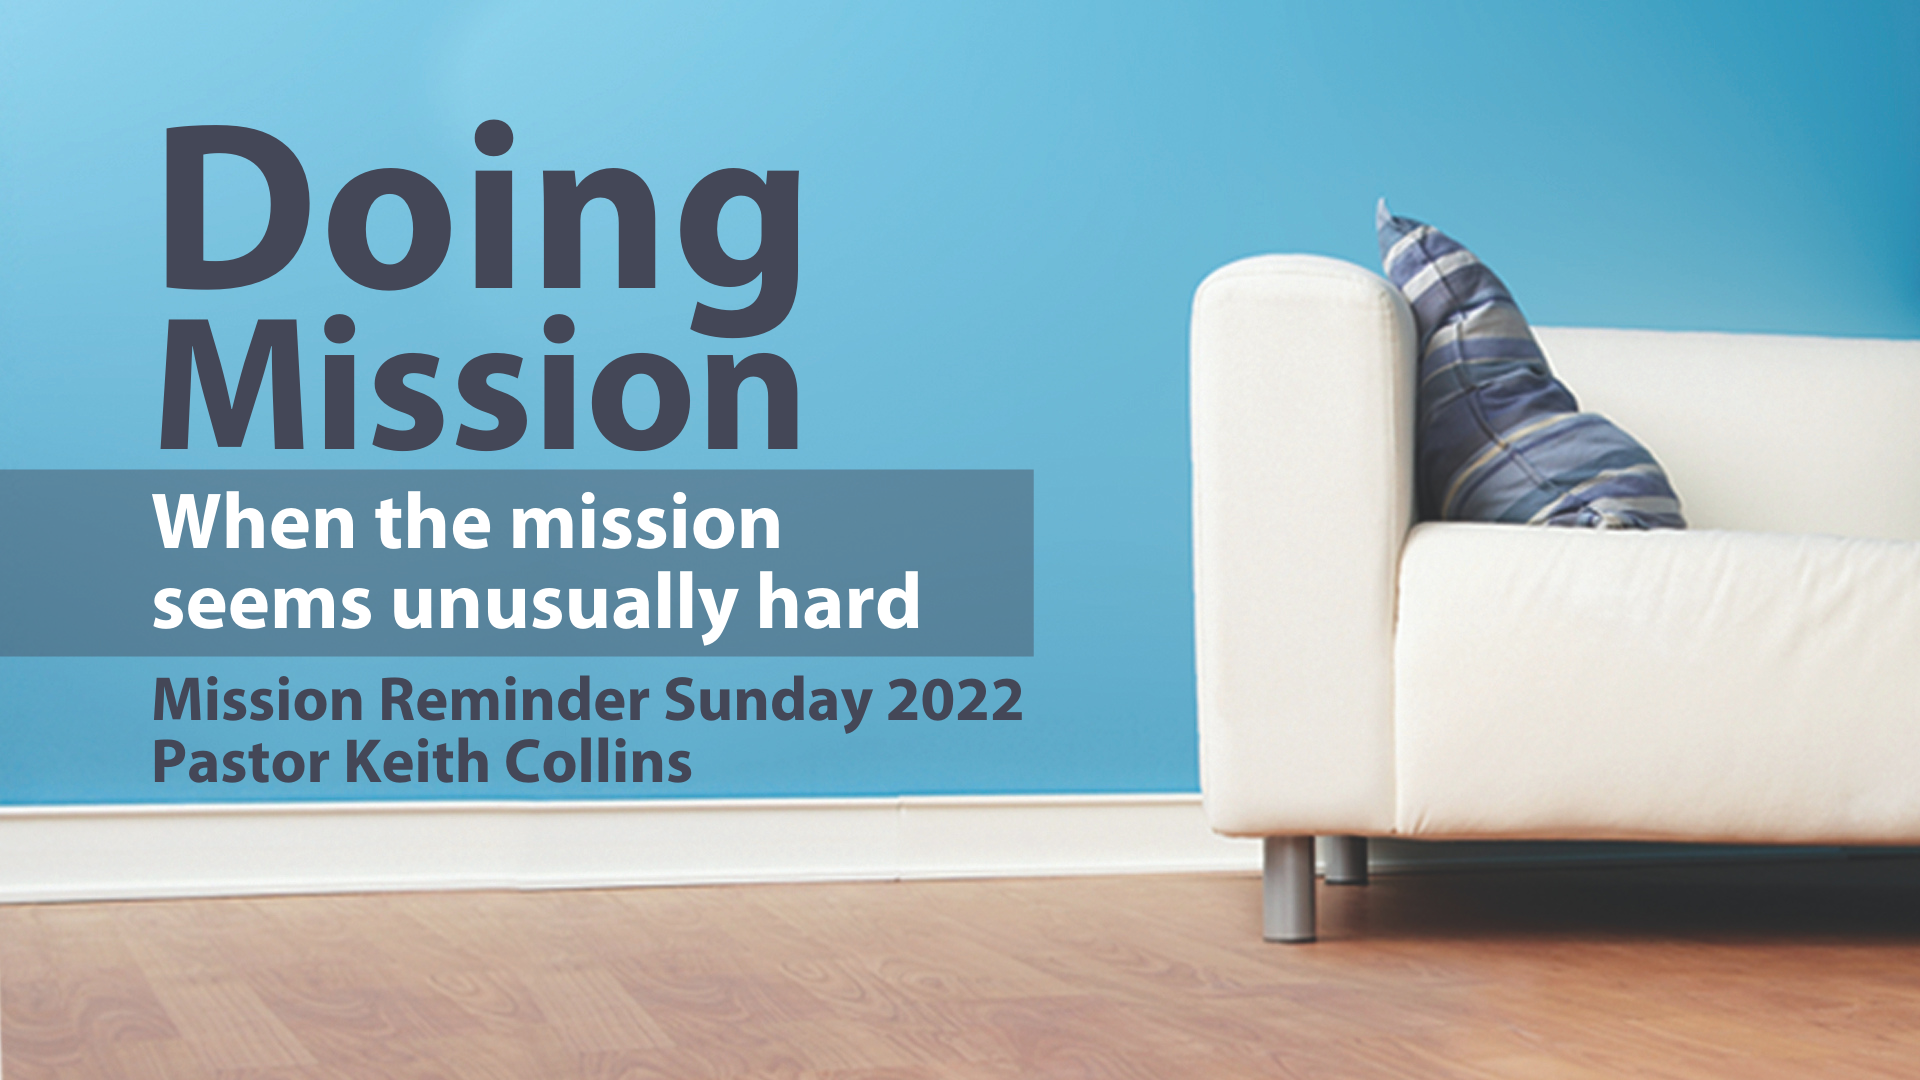 Mission Reminder Sunday 2022 banner